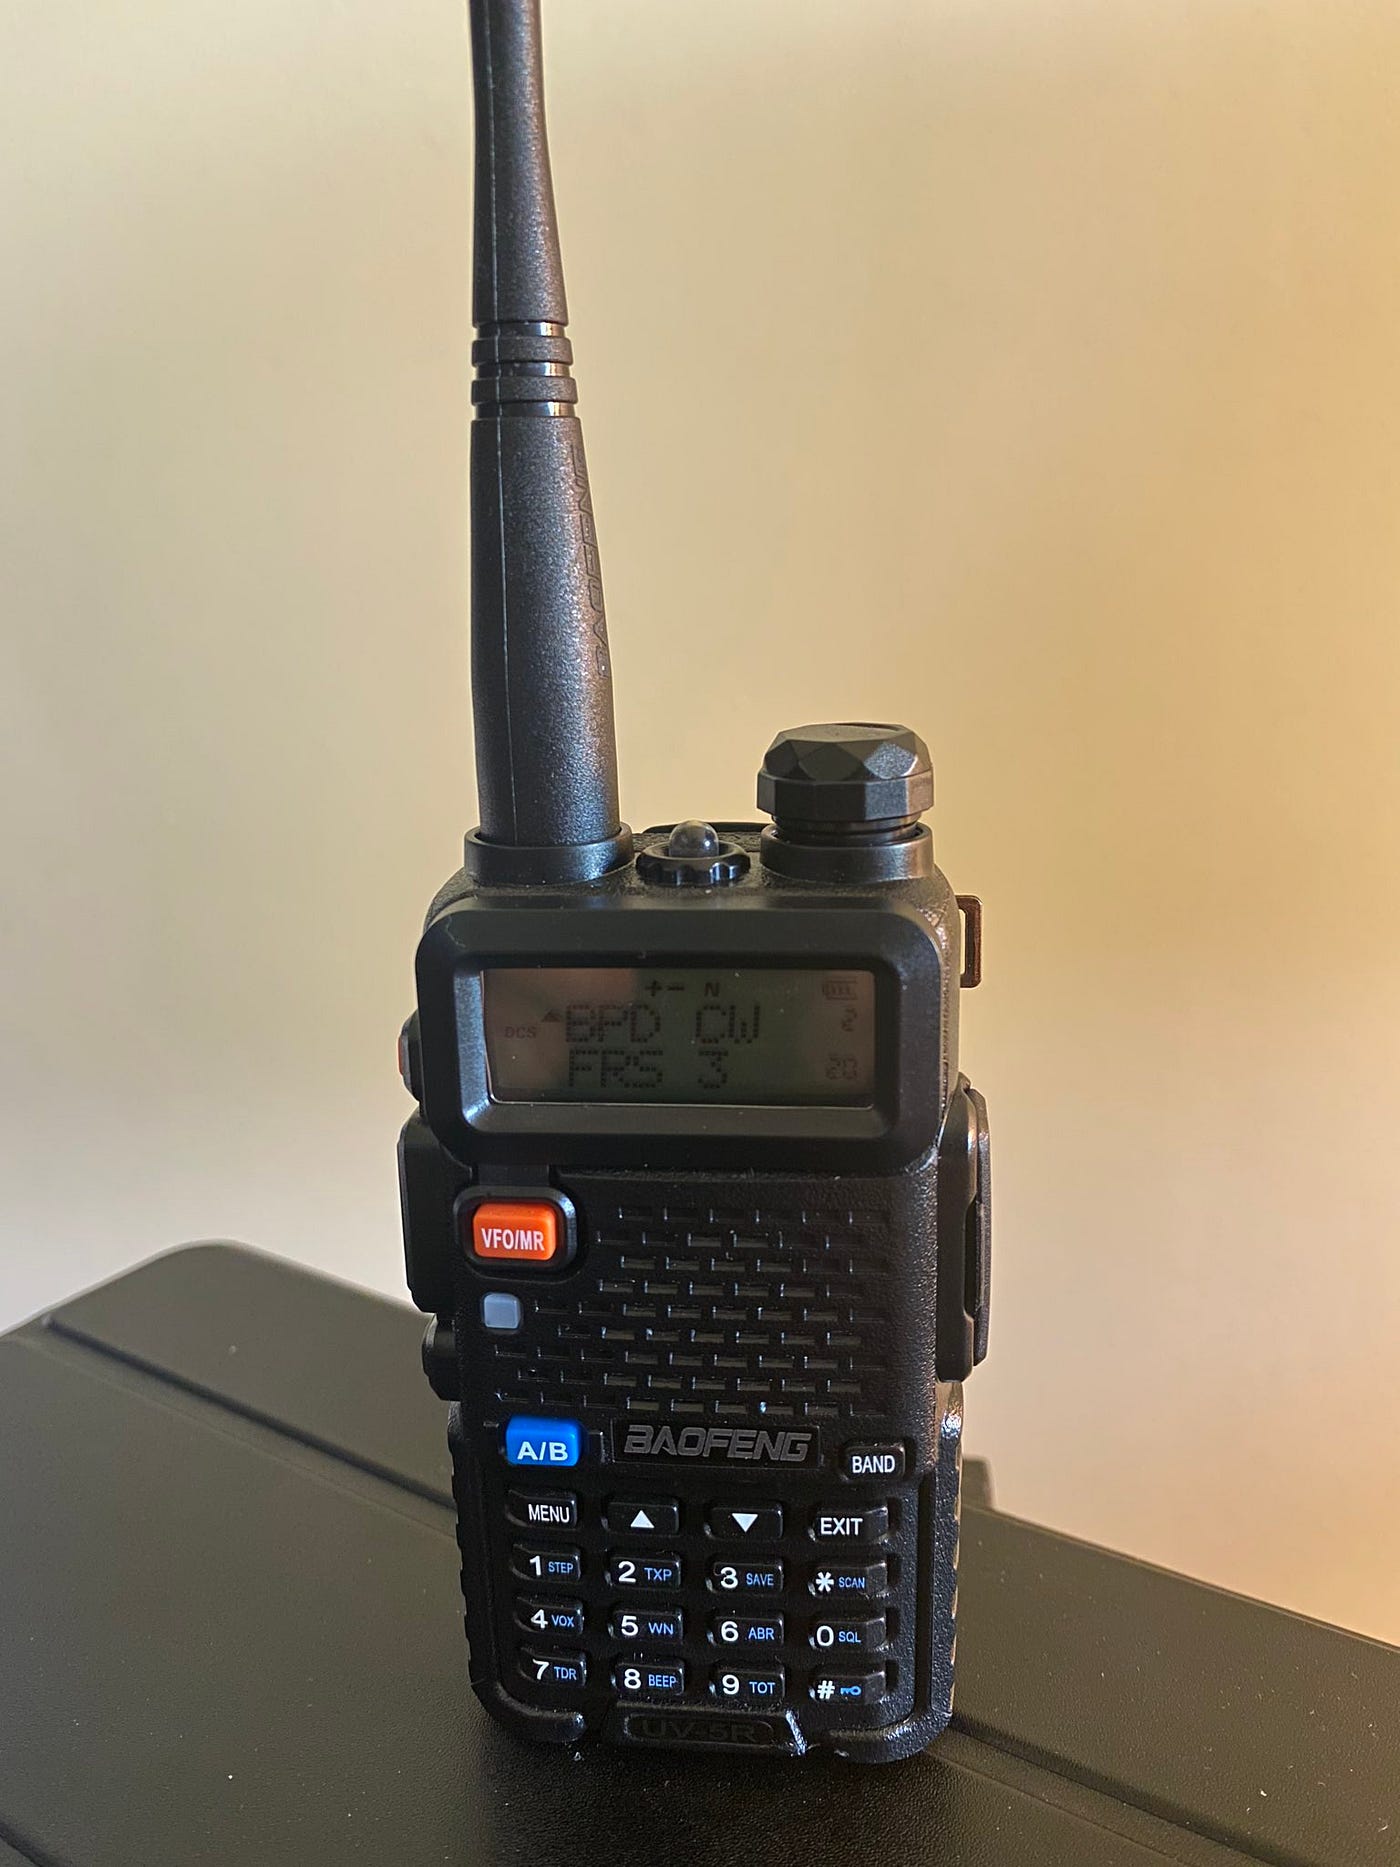 Radio Digital Baofeng UV-5R